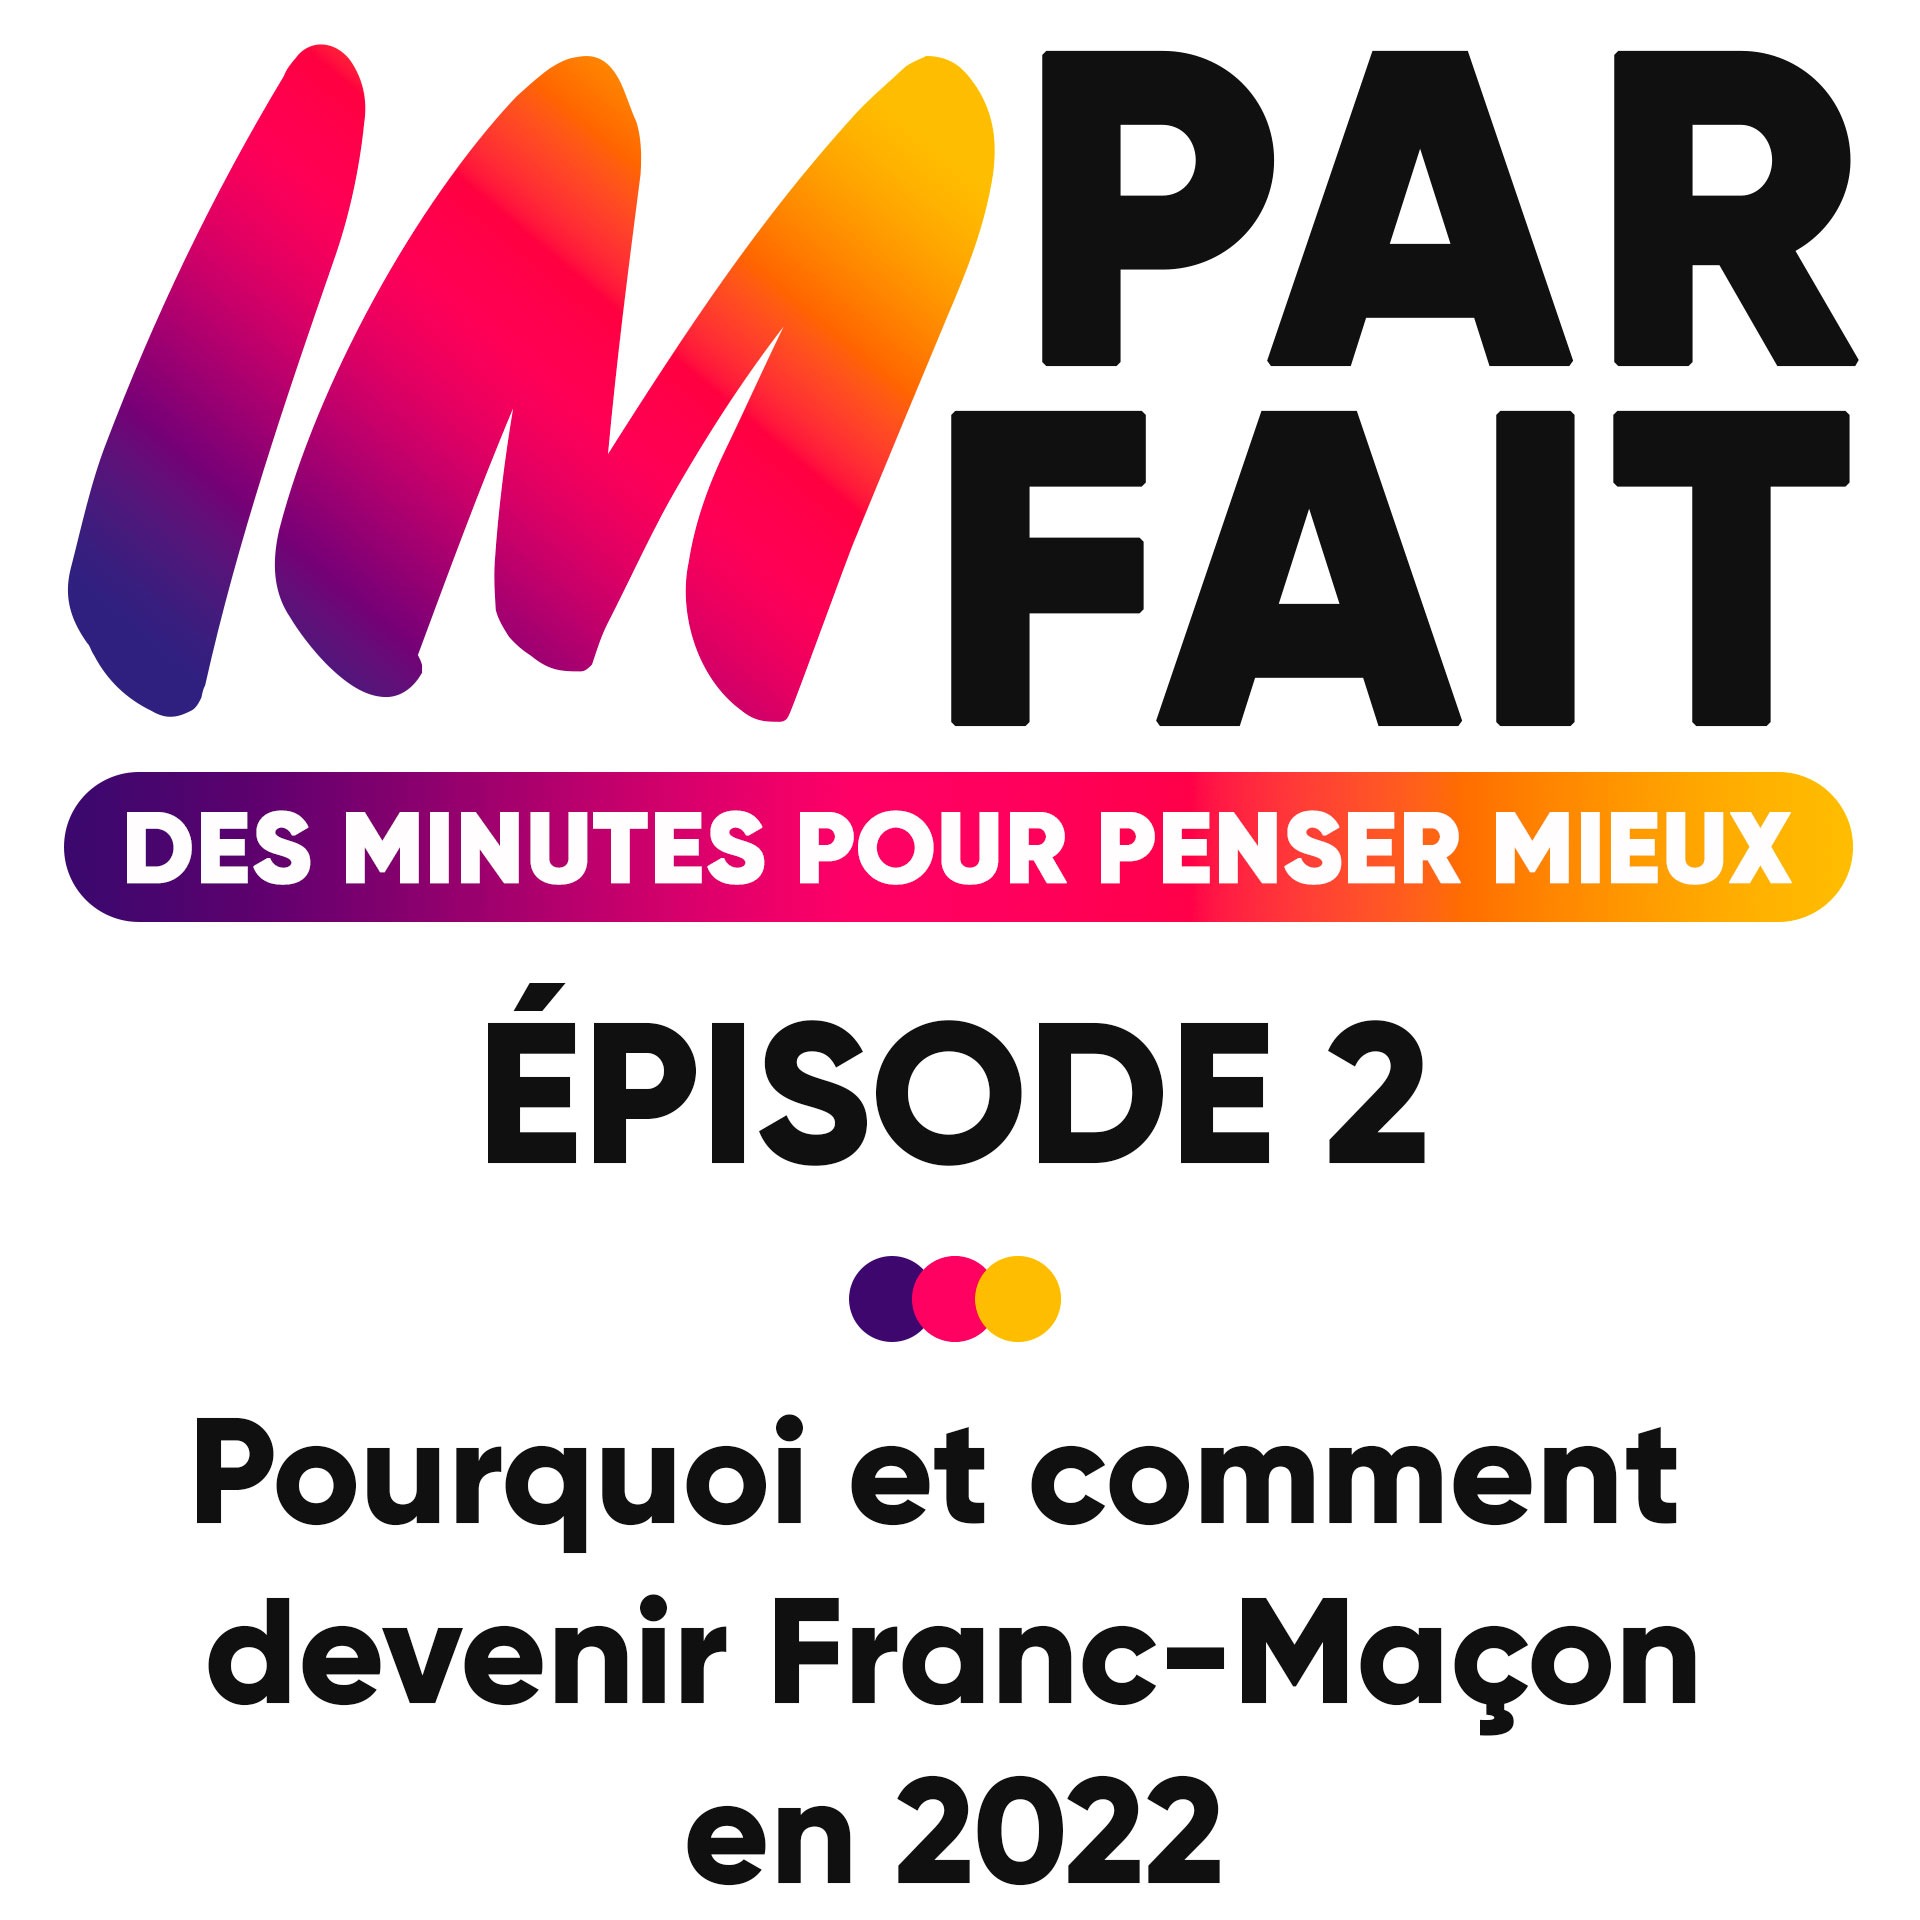 Episode 2 - Pourquoi et comment devenir Franc-Maçon en 2022